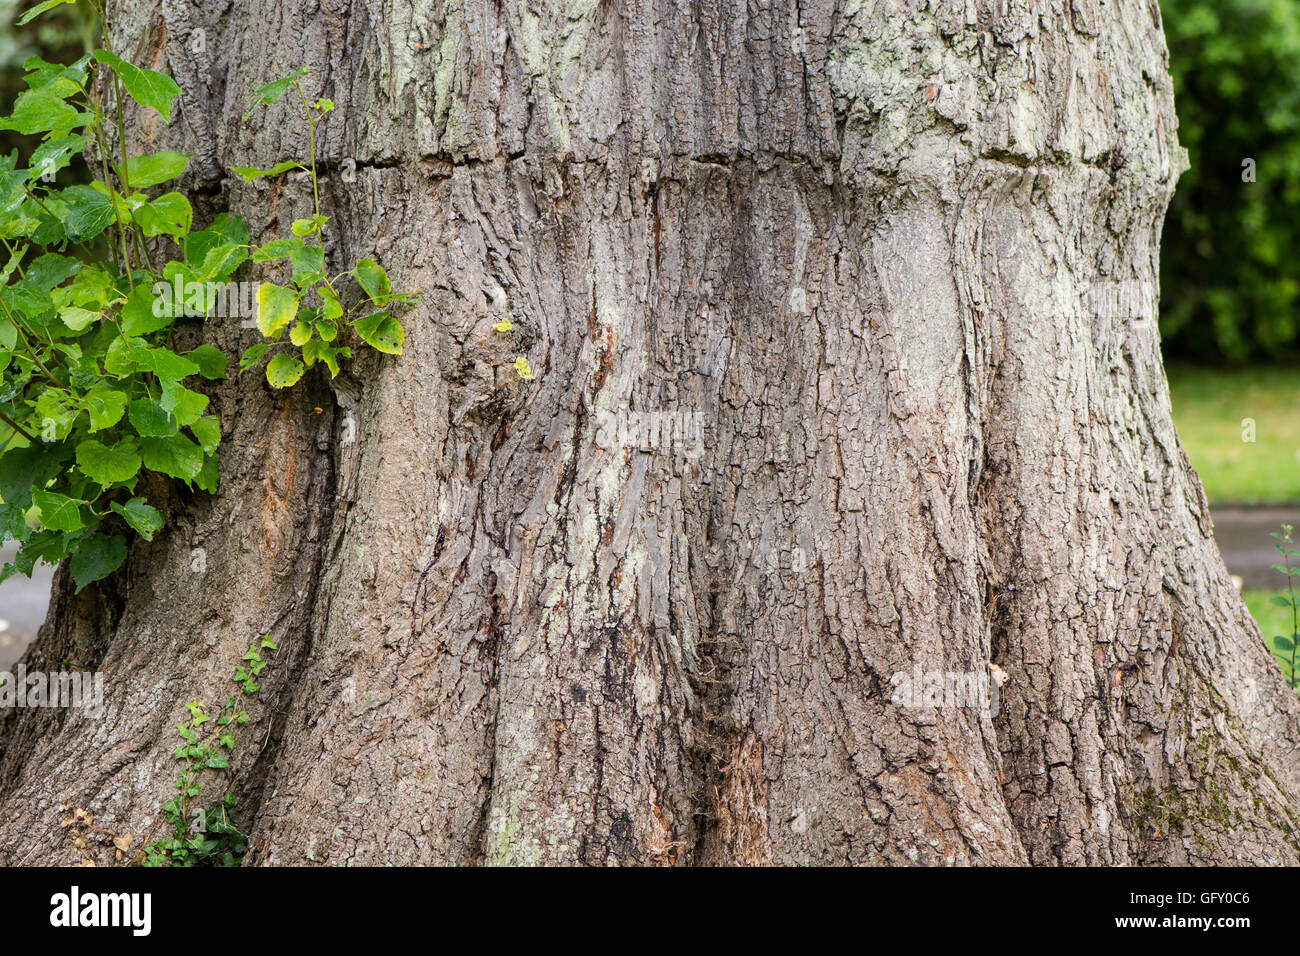 Tronco de árbol marcado por banda apretada mientras crece. La corteza en el tronco del gran árbol caducifolio donde previamente marcada constricción Foto de stock